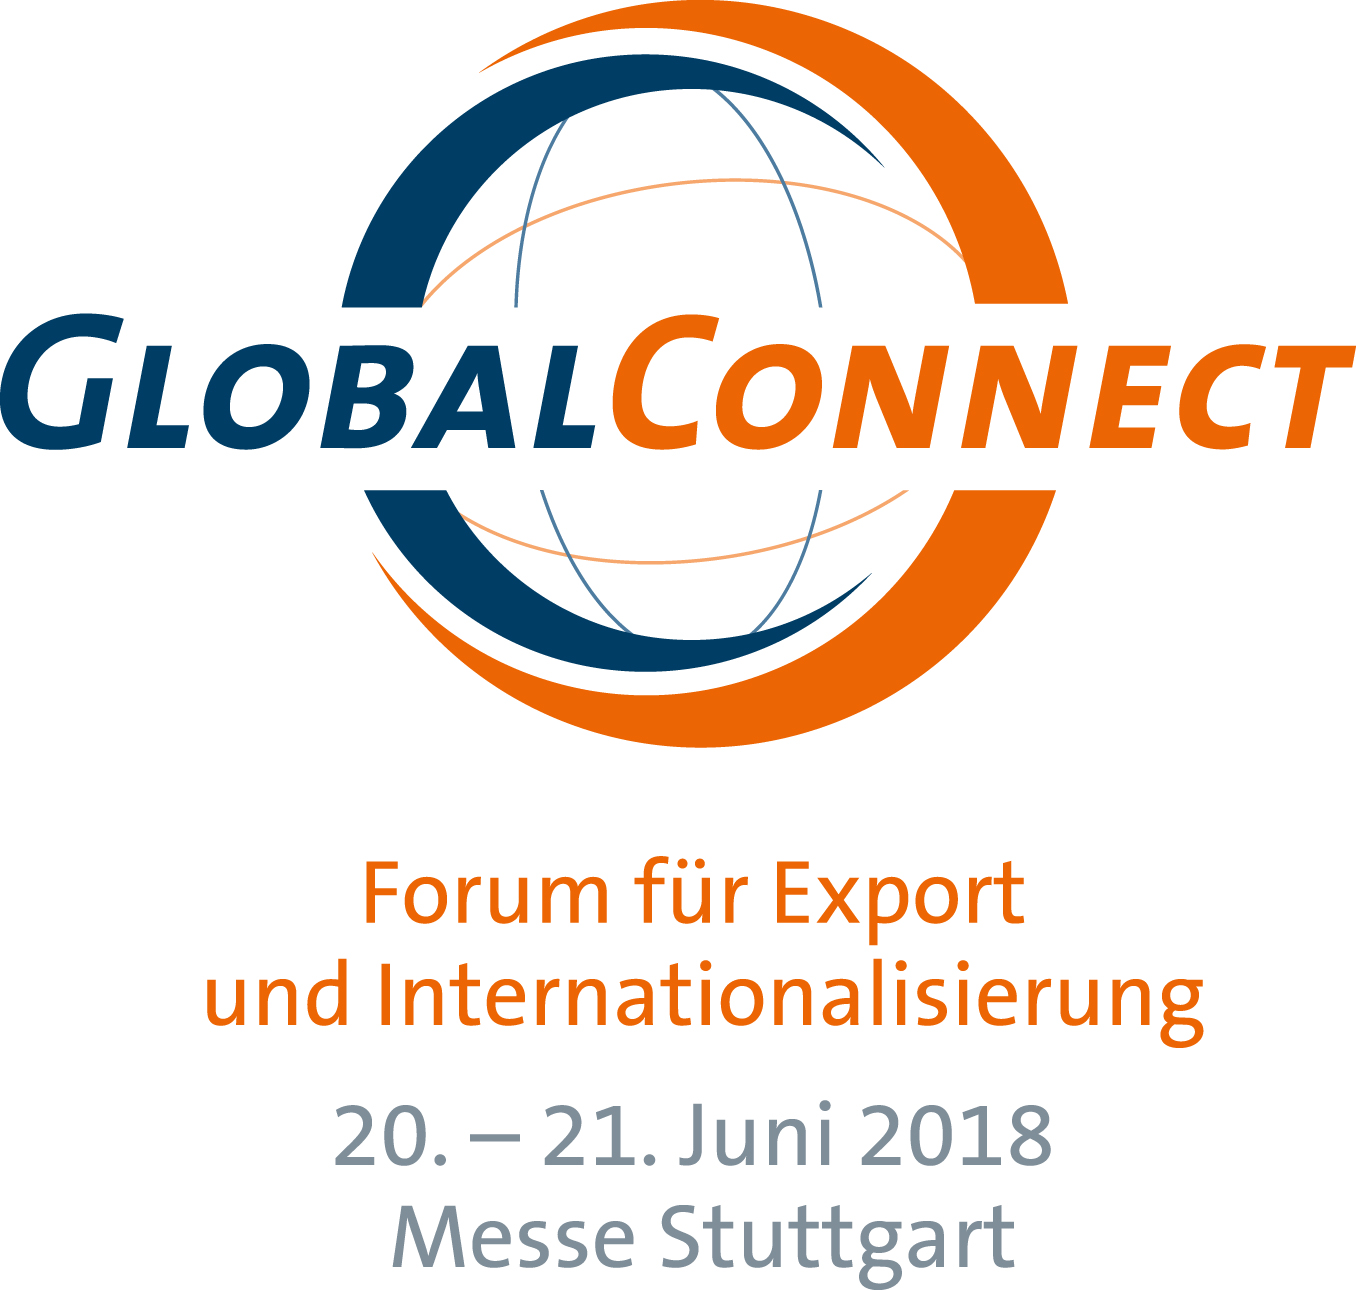 Treffen Sie uns auf der GlobalConnect in Stuttgart